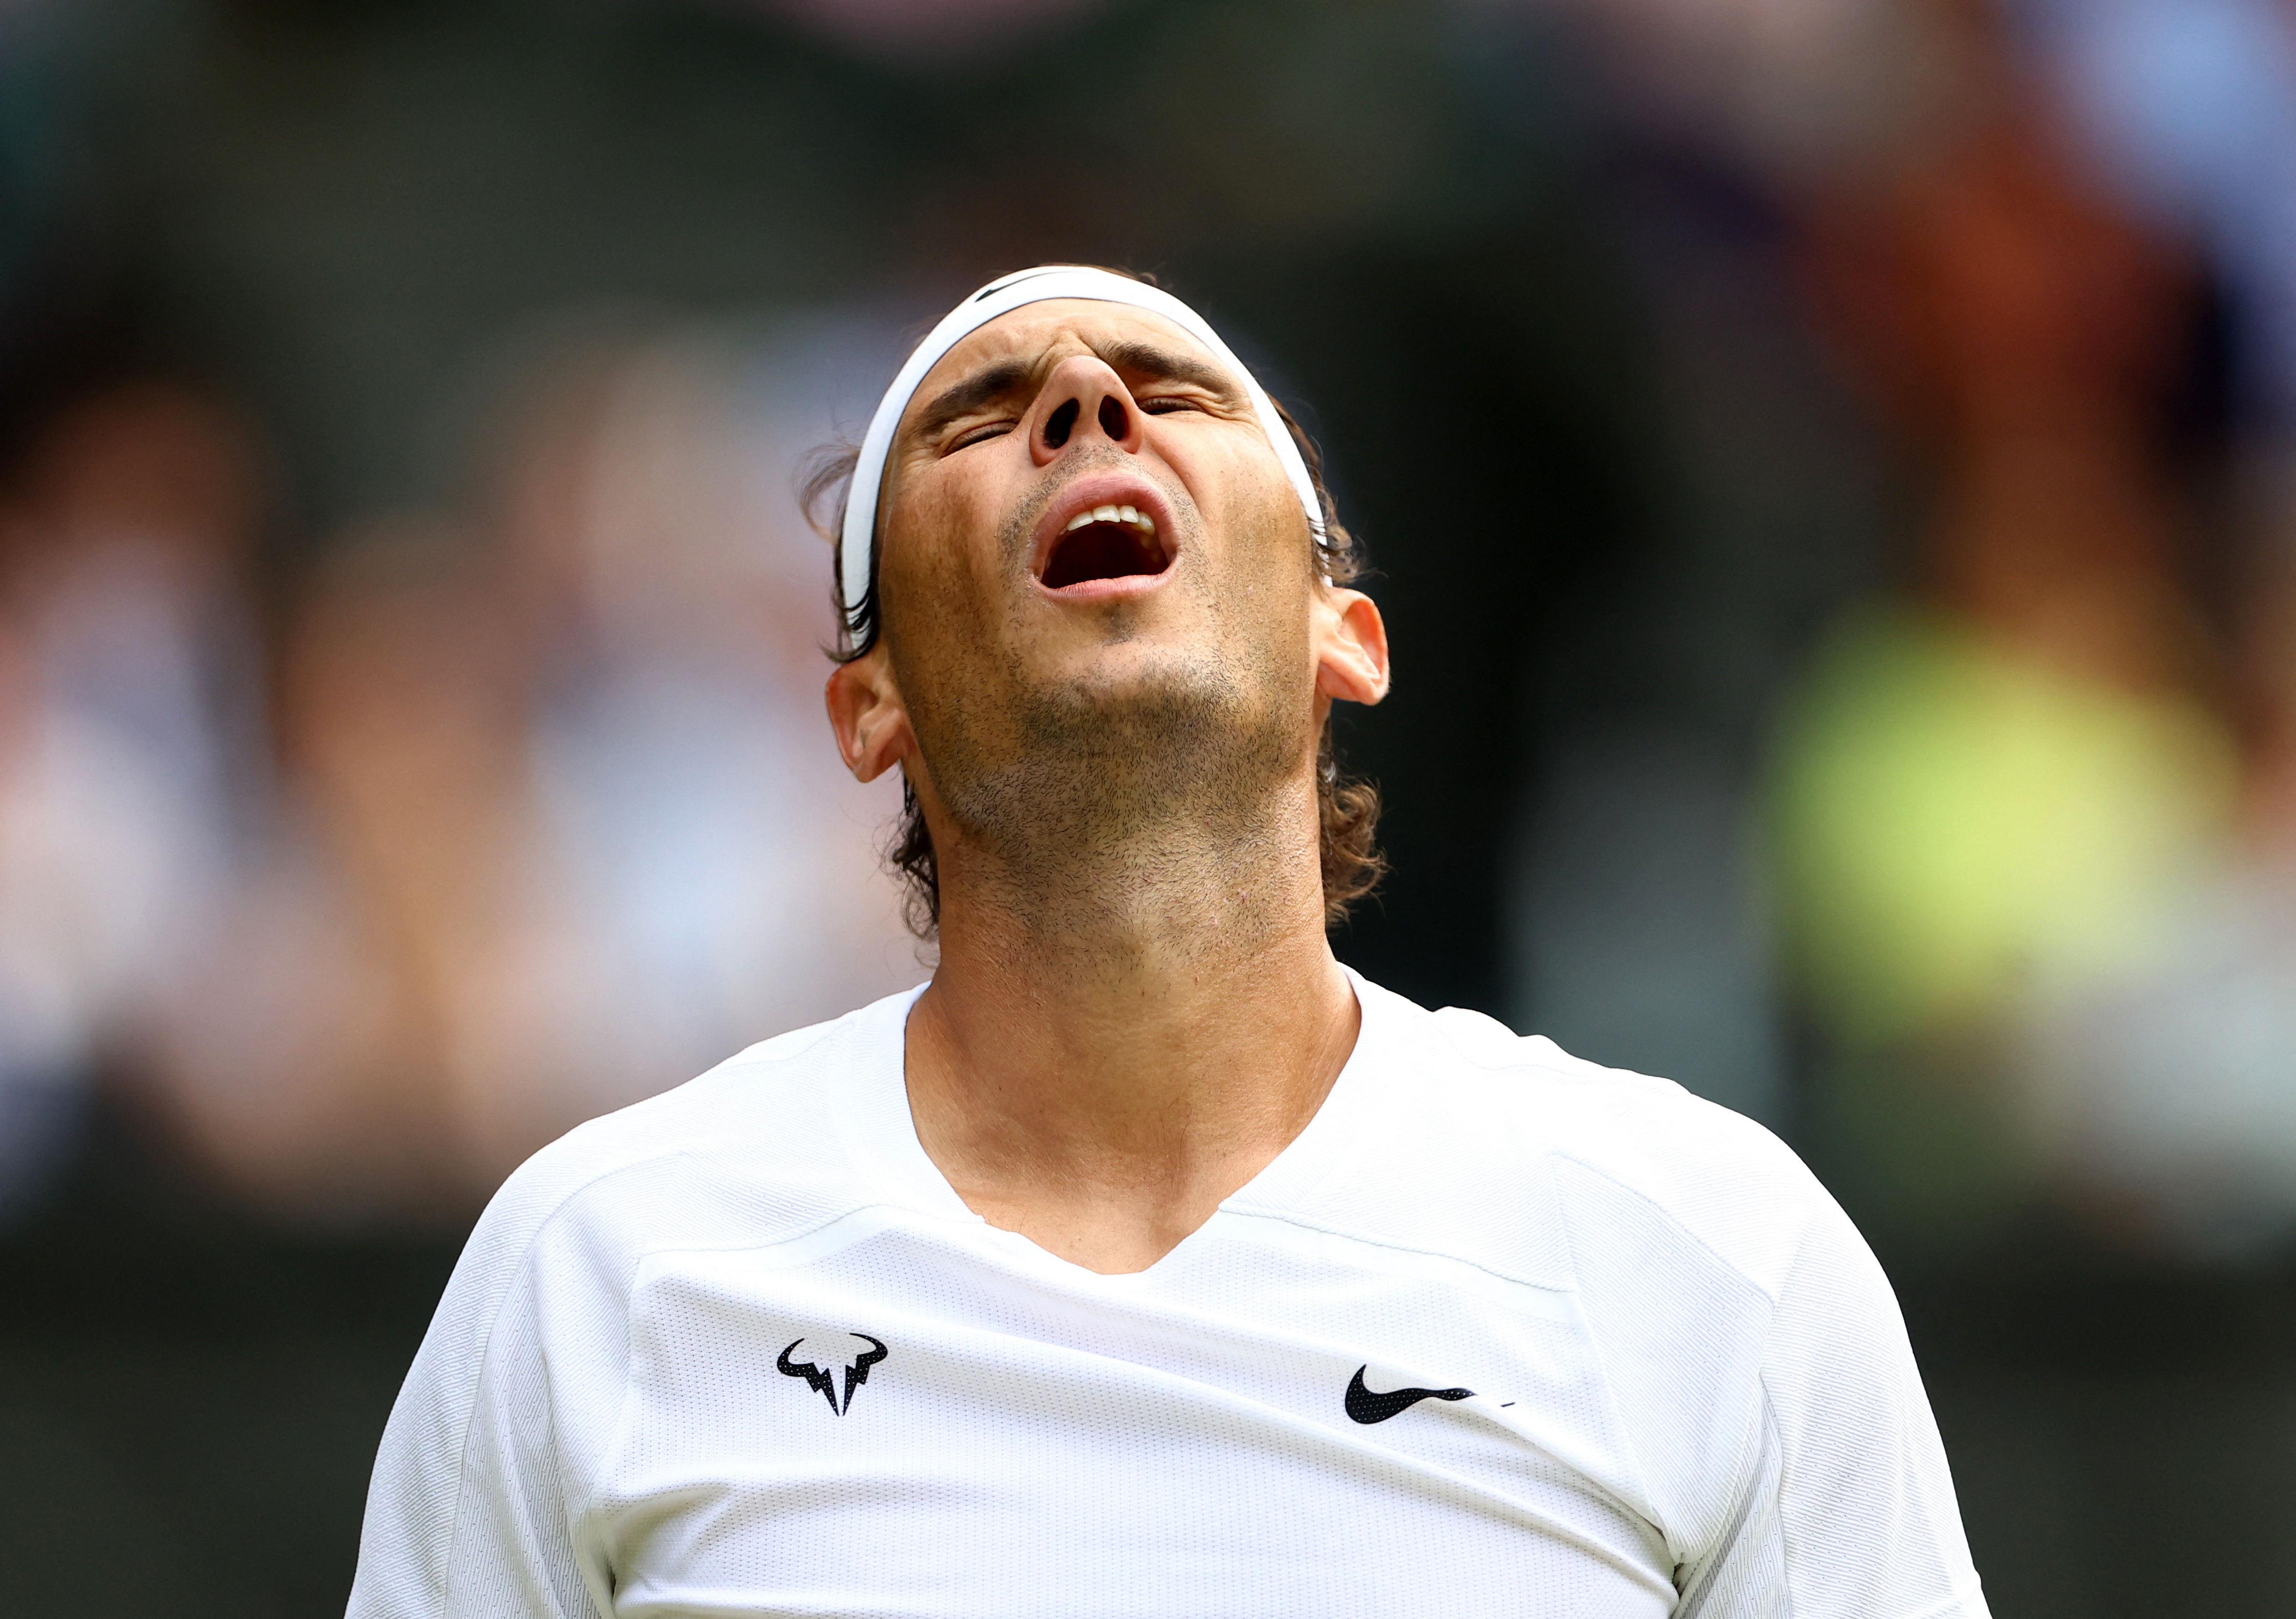 Se lesionó, su equipo le dijo que abandone pero ganó tras jugar más de 4 horas: el heroico triunfo de Nadal para avanzar a semifinales de Wimbledon 